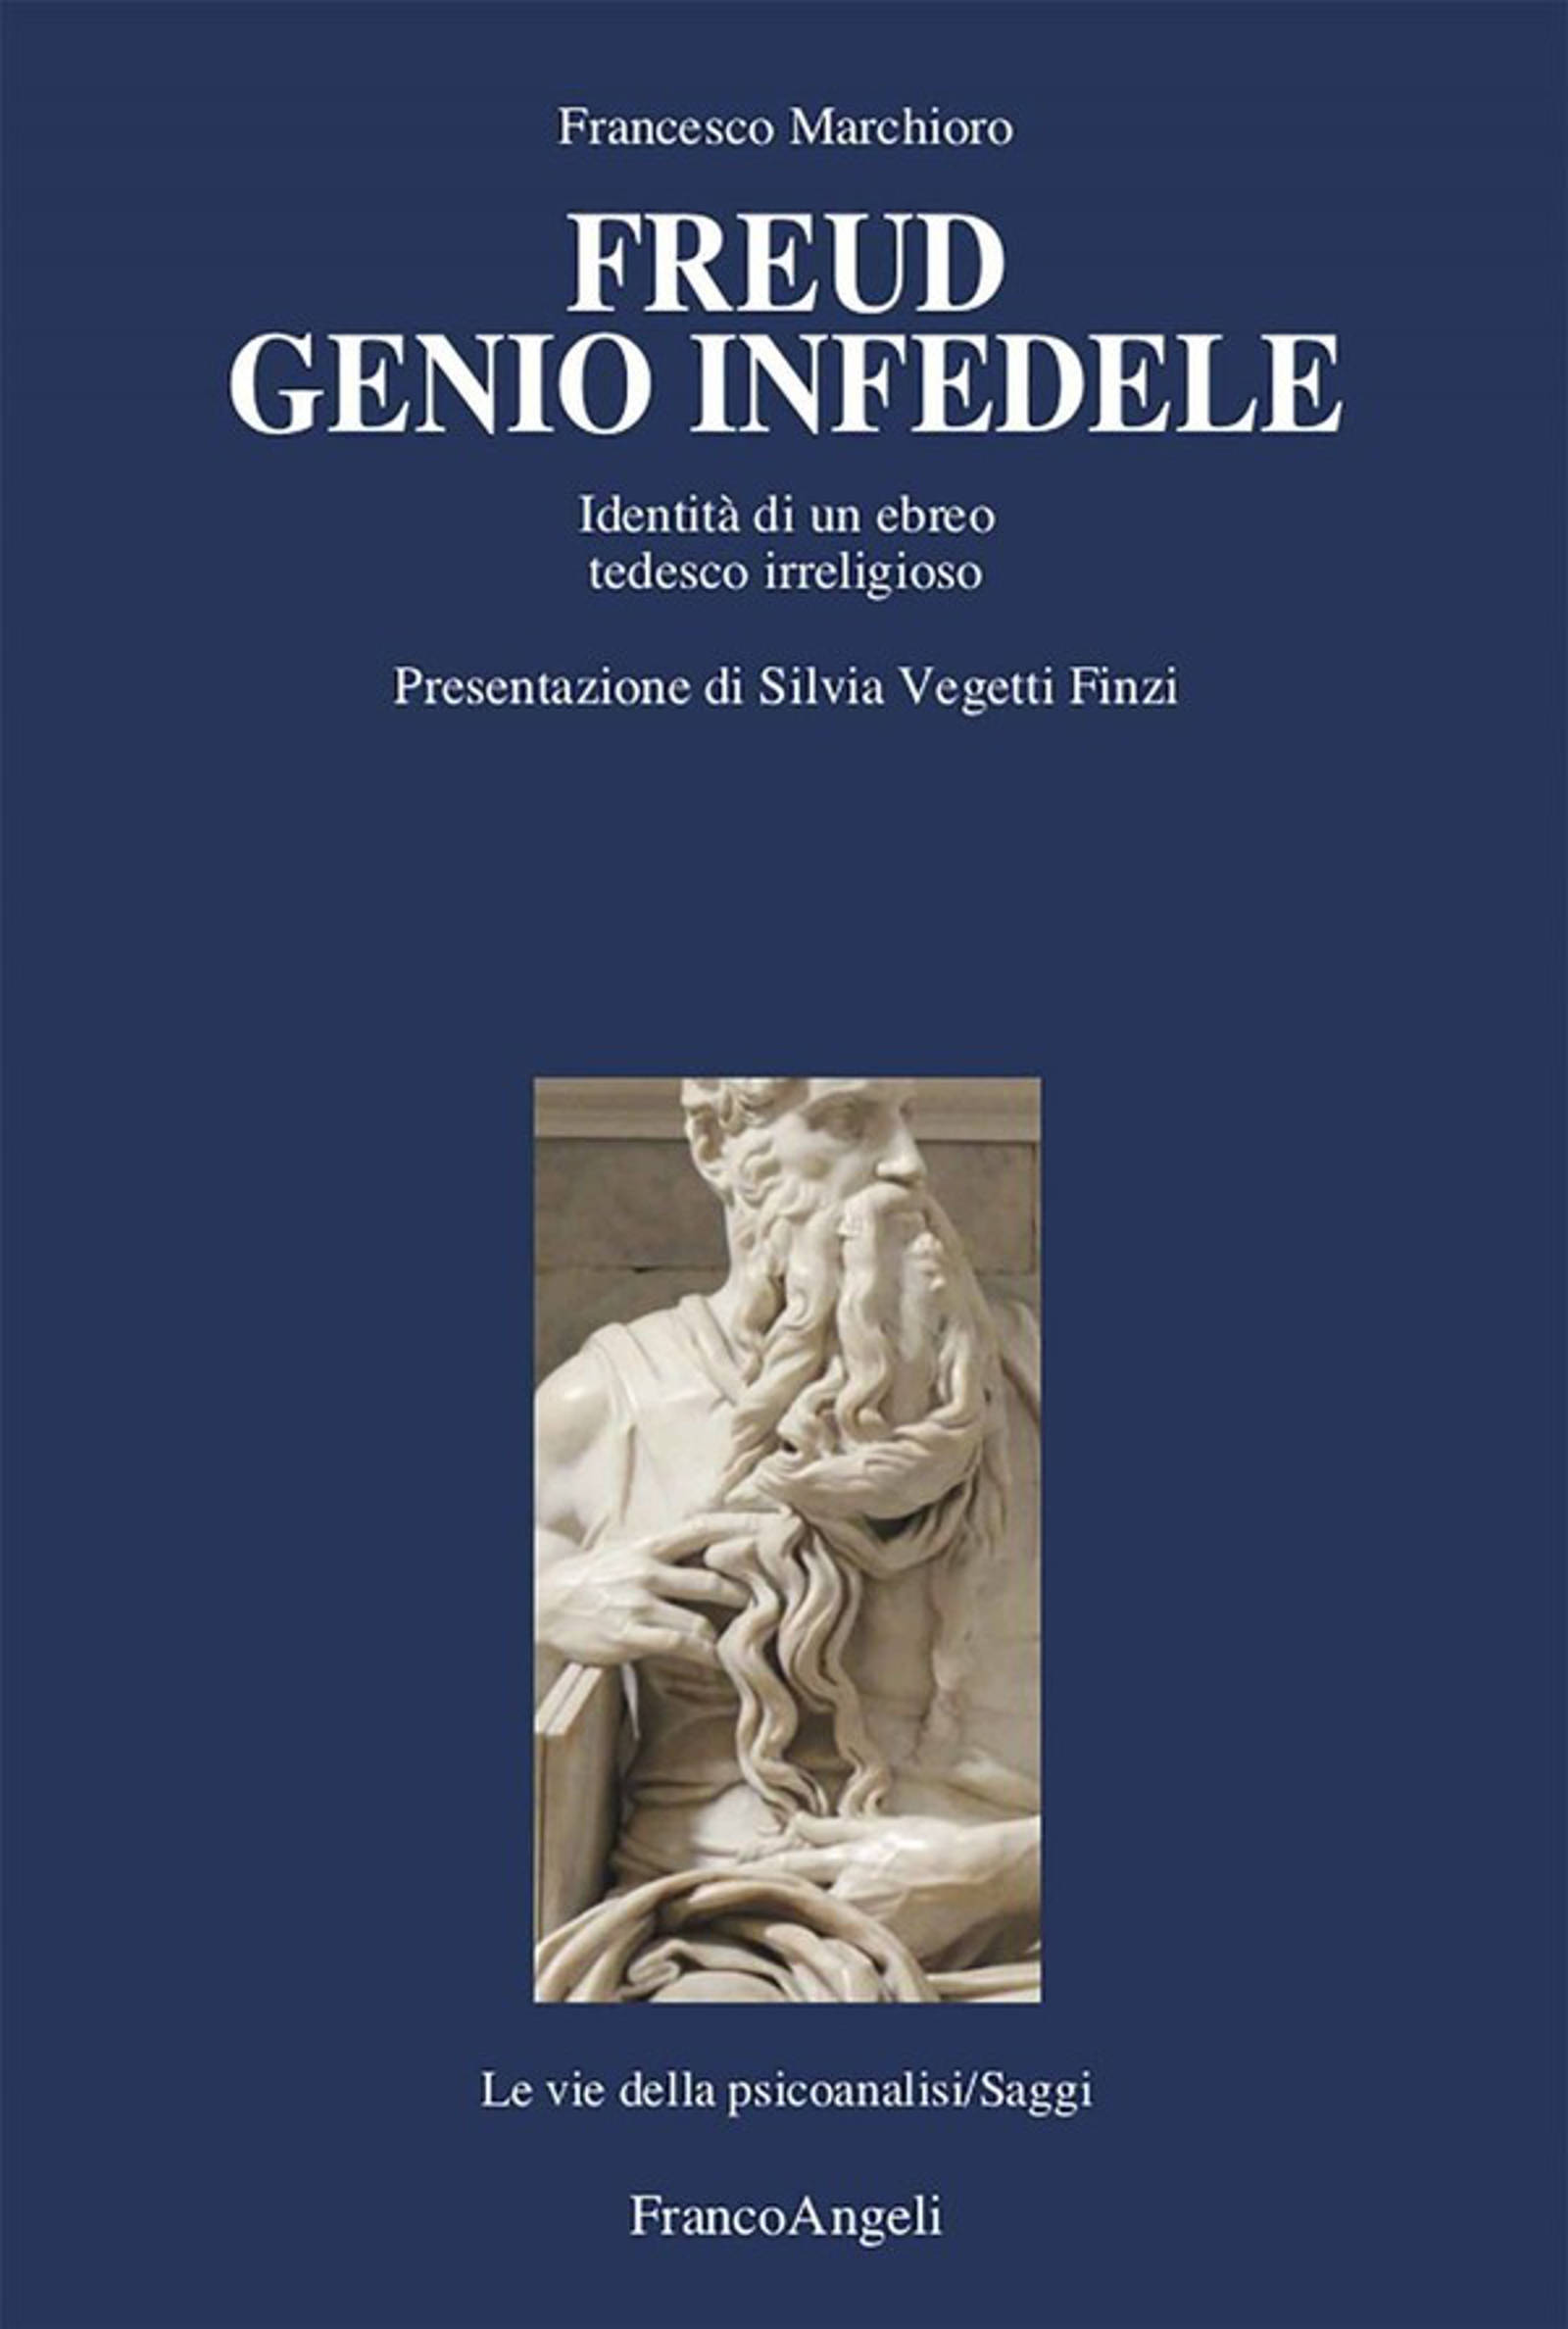 Freud Genio Infedele (2022) di Francesco Marchioro – Recensione